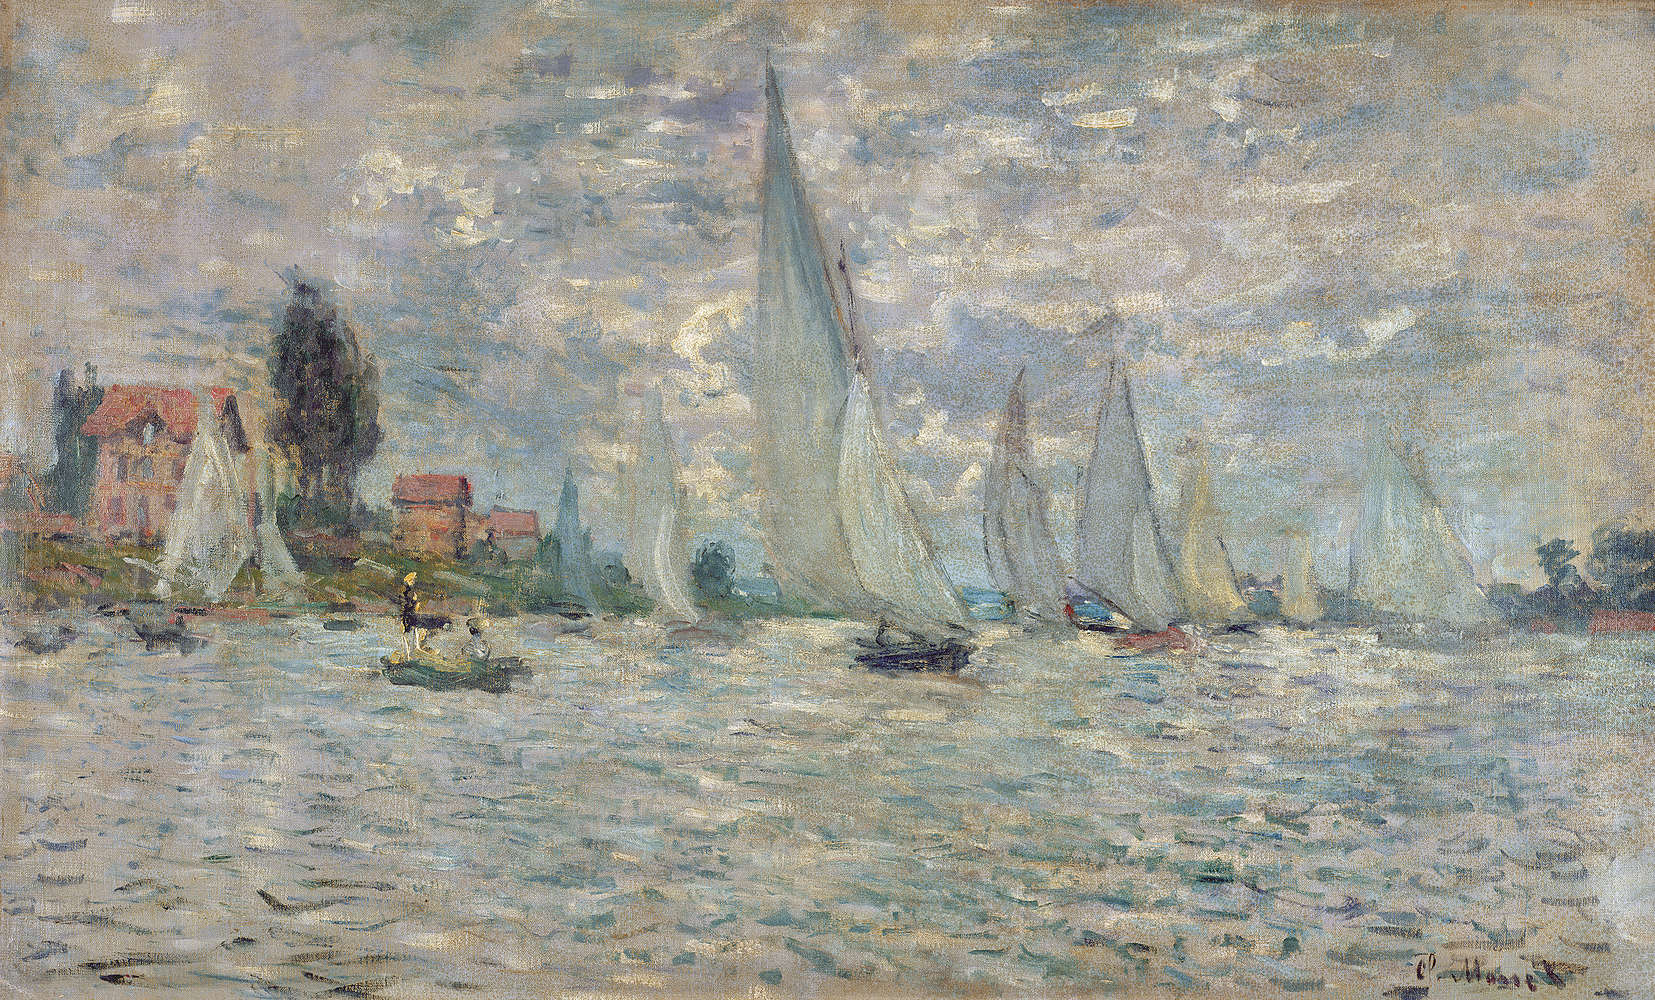             Fototapete "Die Boote oder die Regatta in Argenteuil" von Claude Monet
        